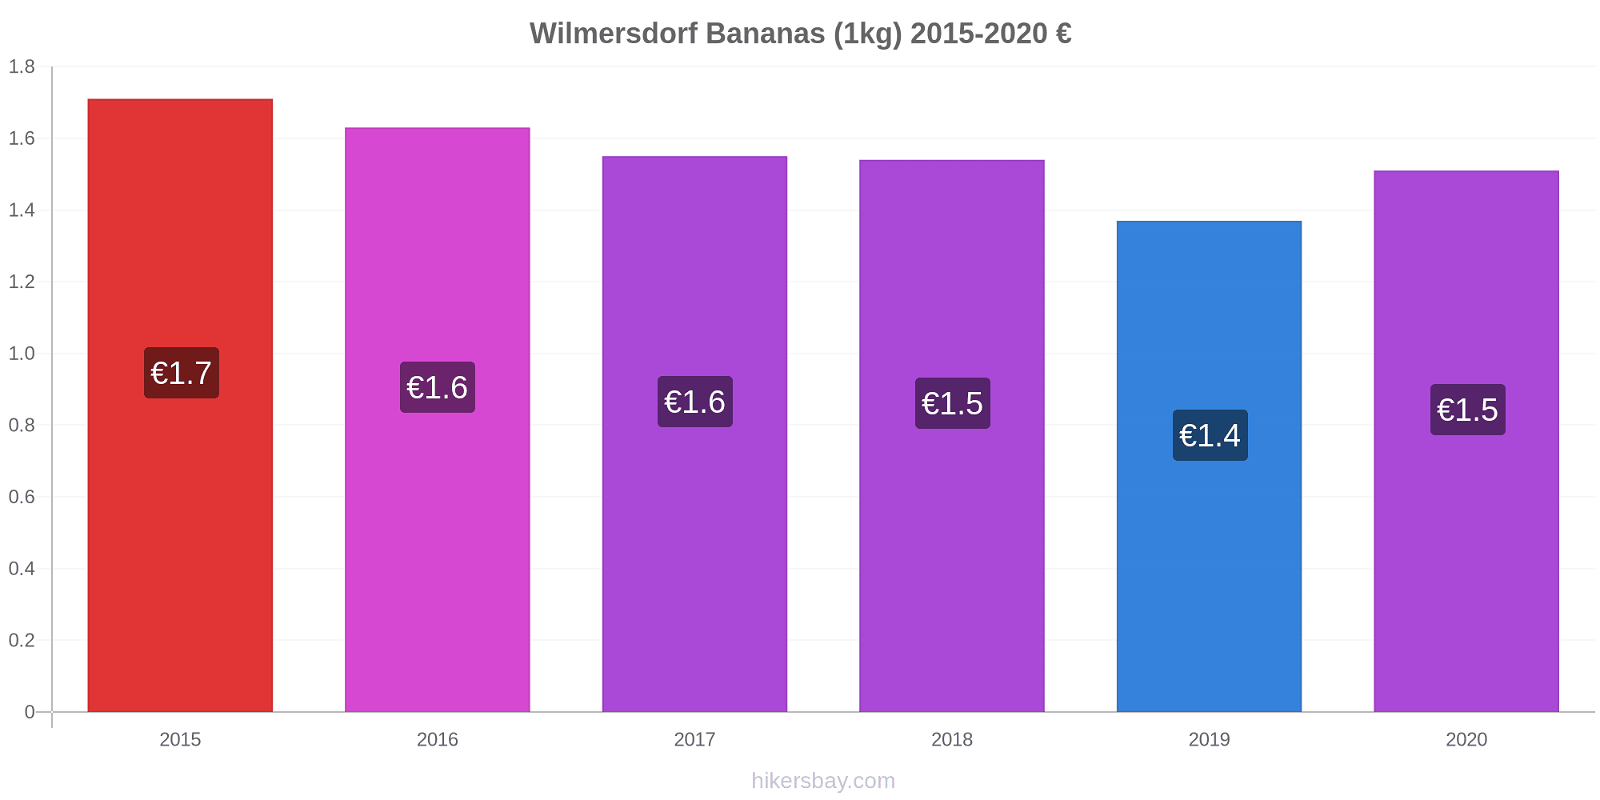 Wilmersdorf variação de preço Banana (1kg) hikersbay.com